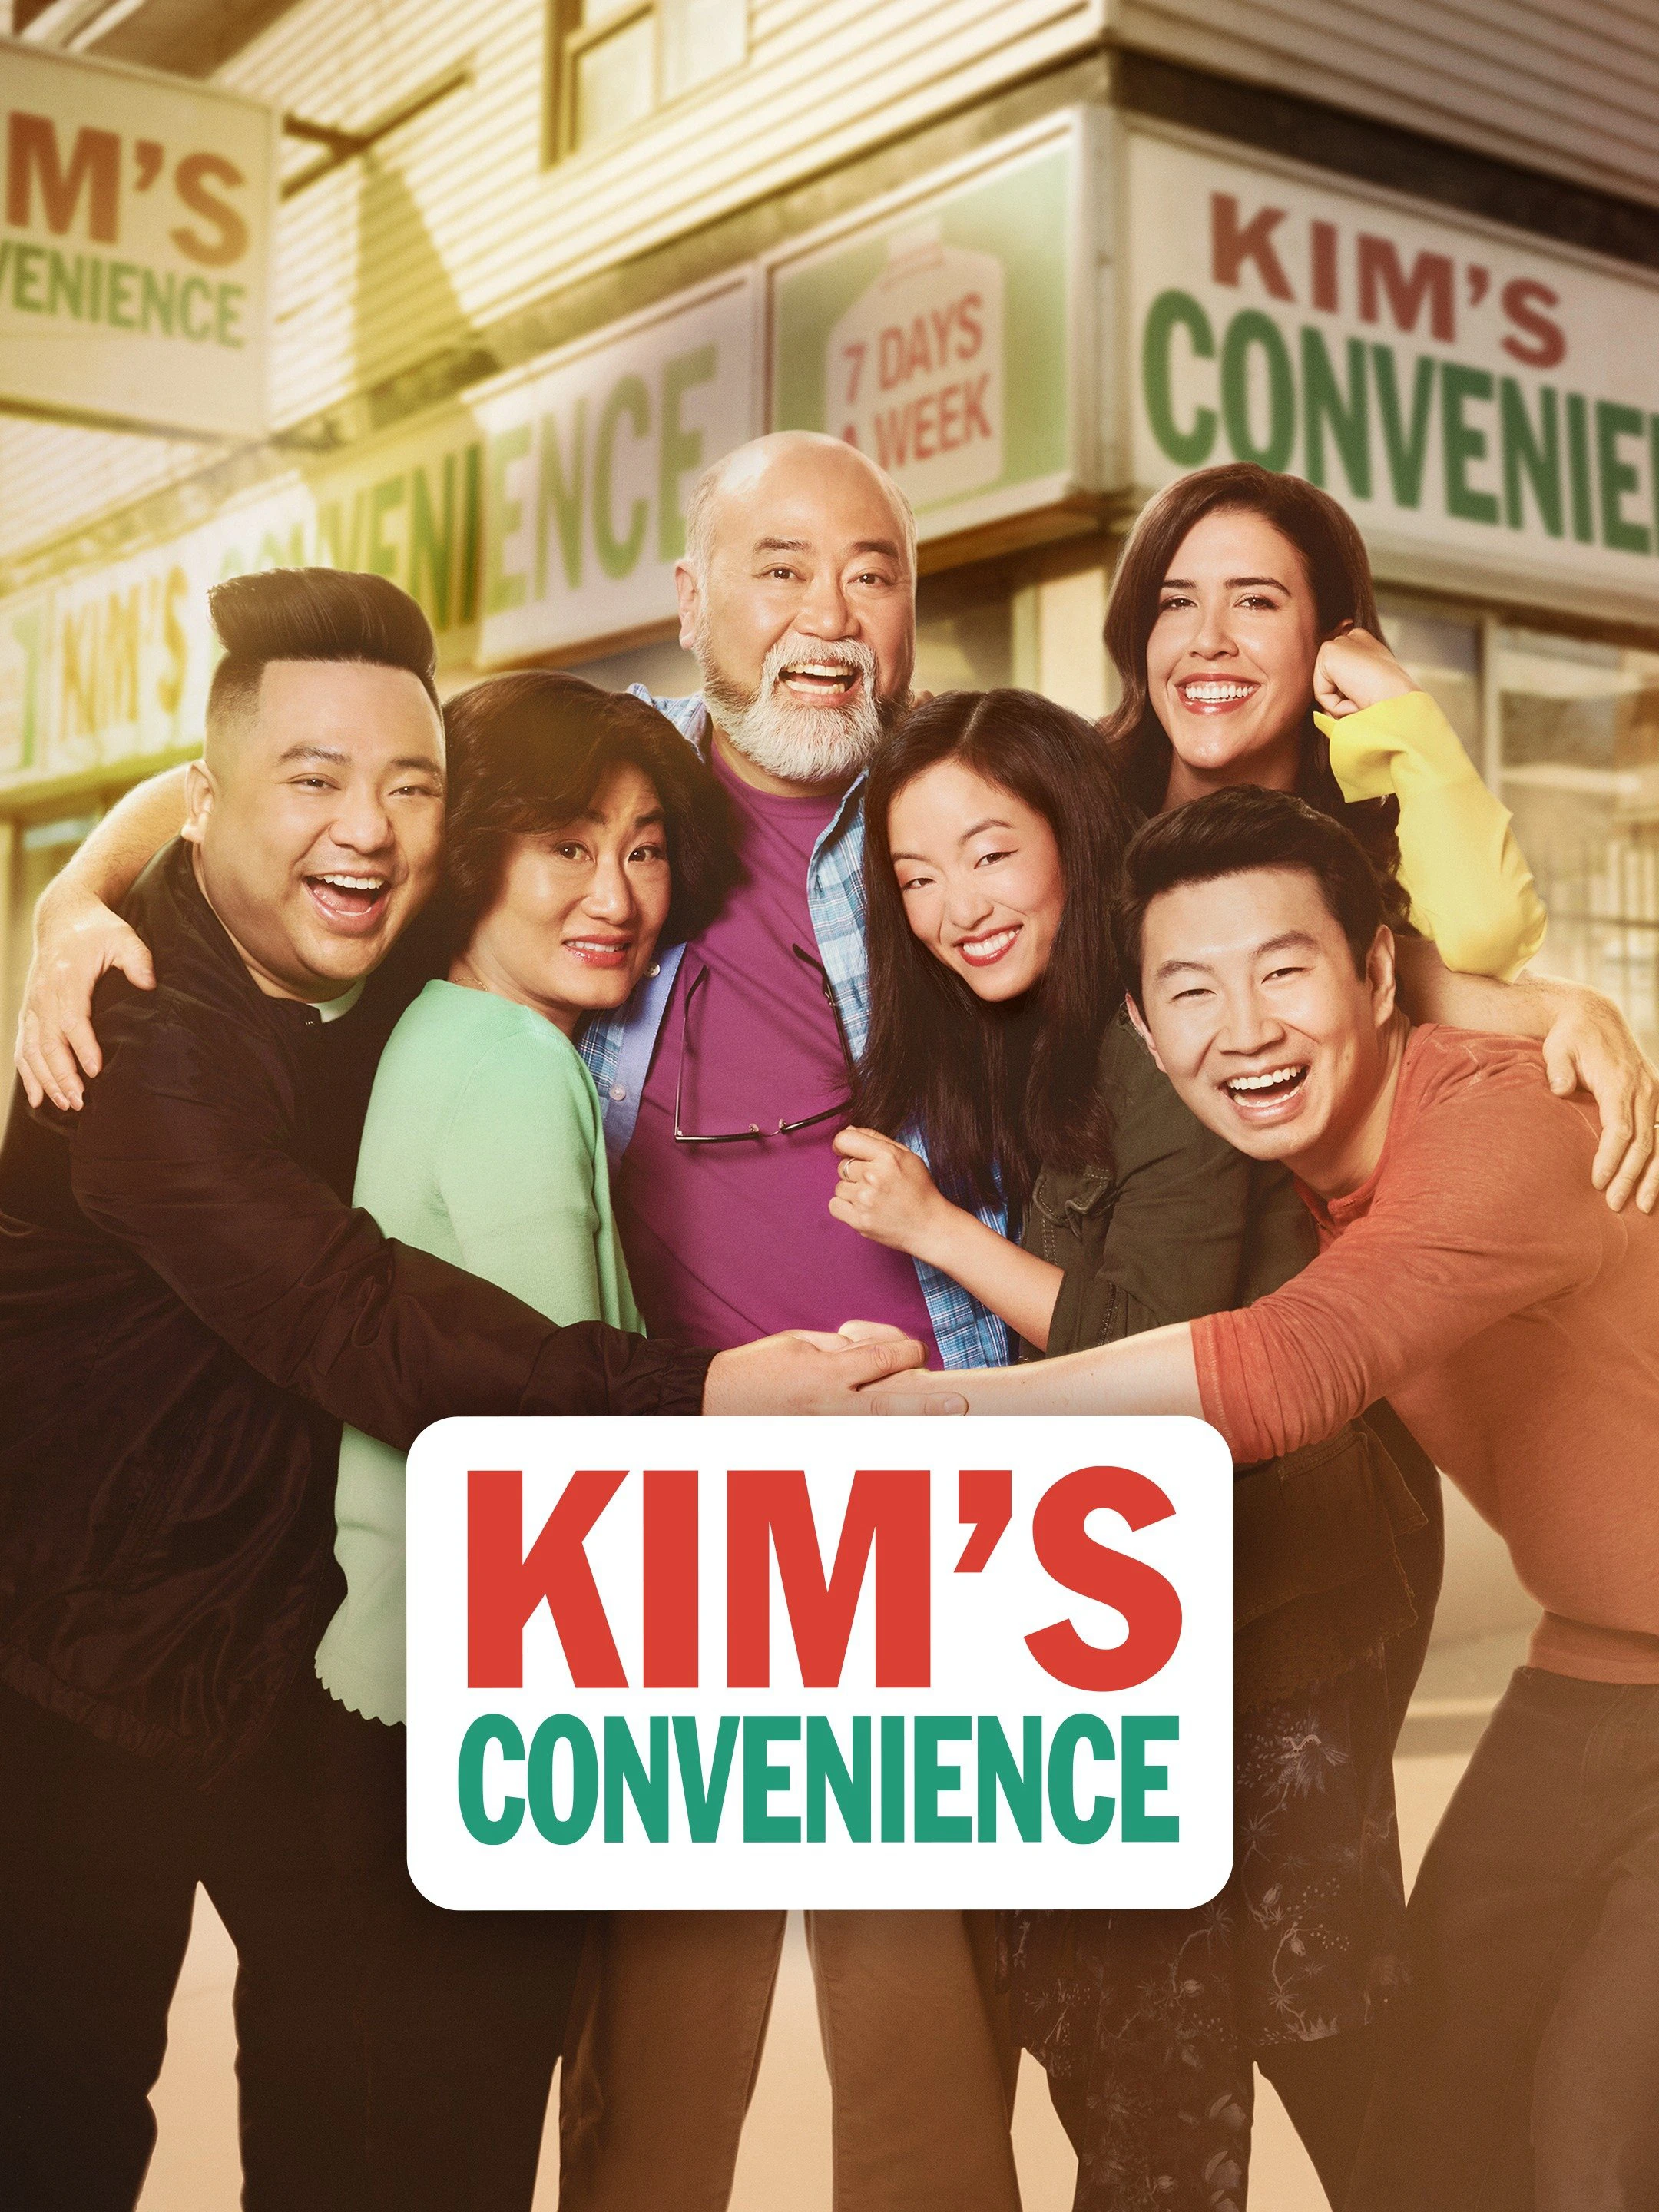 Cửa hàng tiện lợi nhà Kim (Phần 5) | Kim's Convenience (Season 5) (2021)